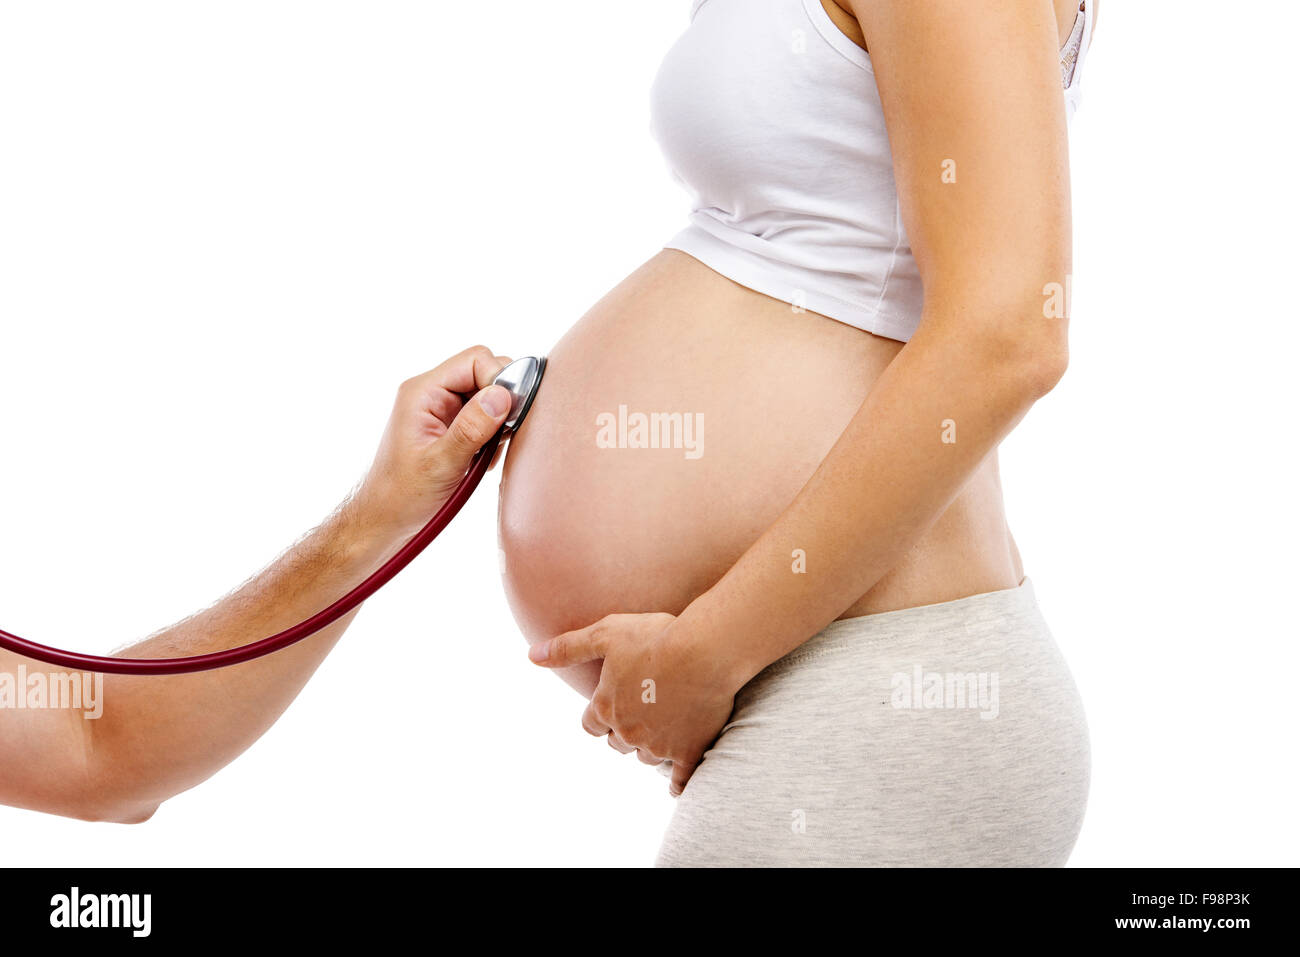 Irriconoscibile donna incinta essendo dato prenatale a controllare dal medico, isolato su sfondo bianco Foto Stock